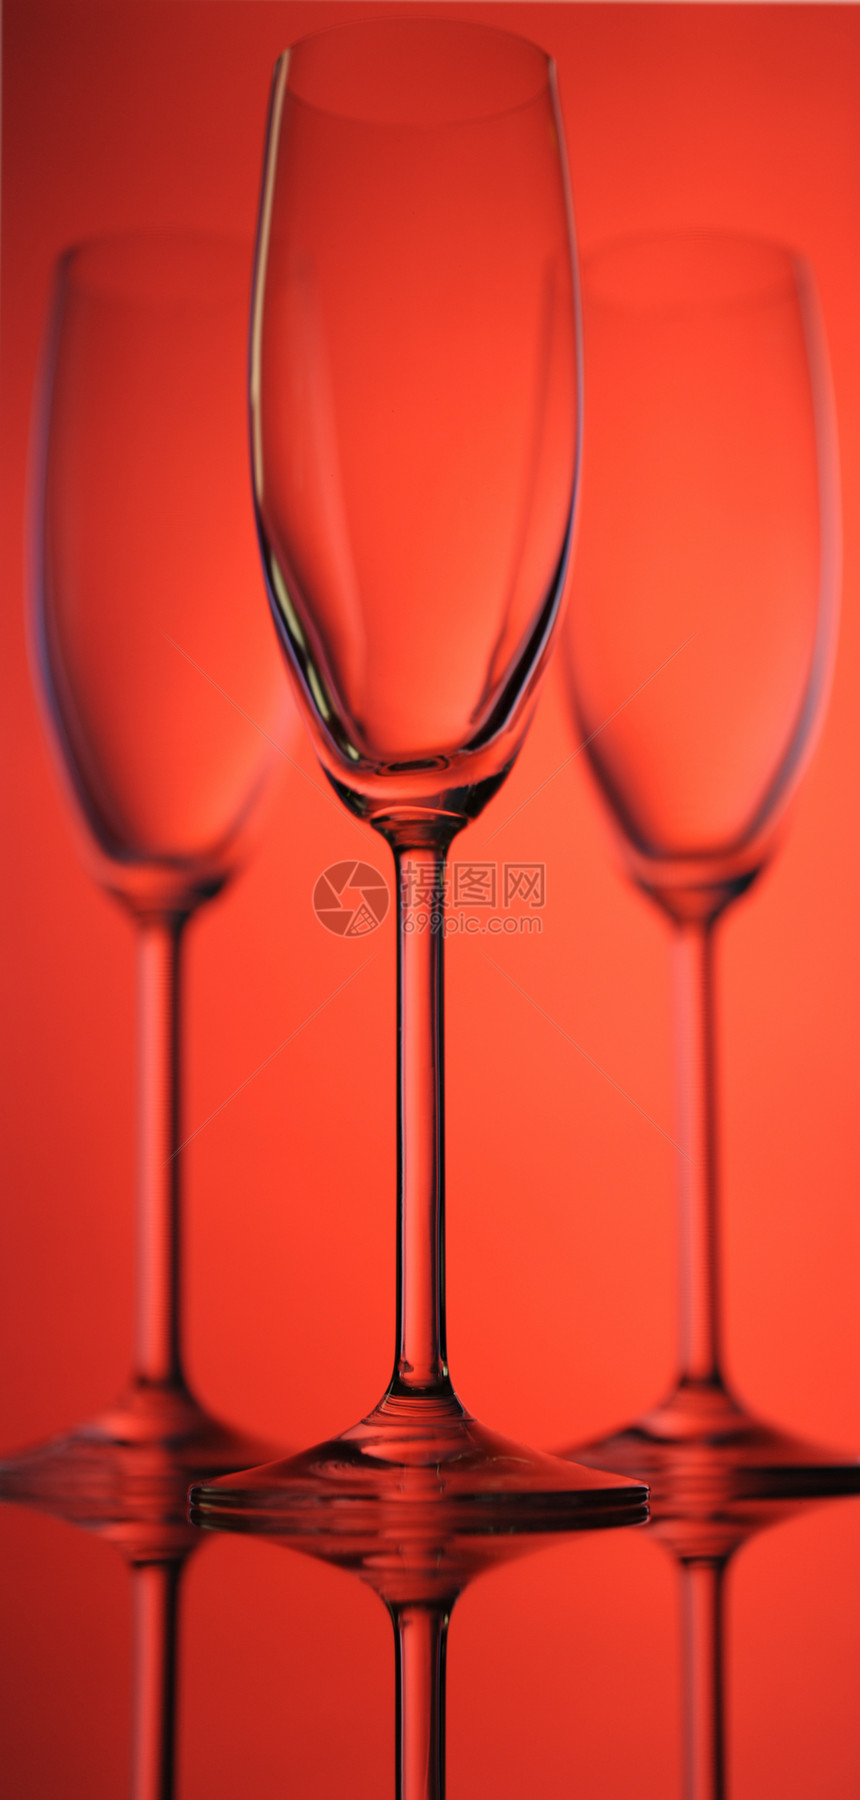 葡萄酒杯纪念日背光水晶玻璃饮料液体周年酒吧餐厅奢华图片